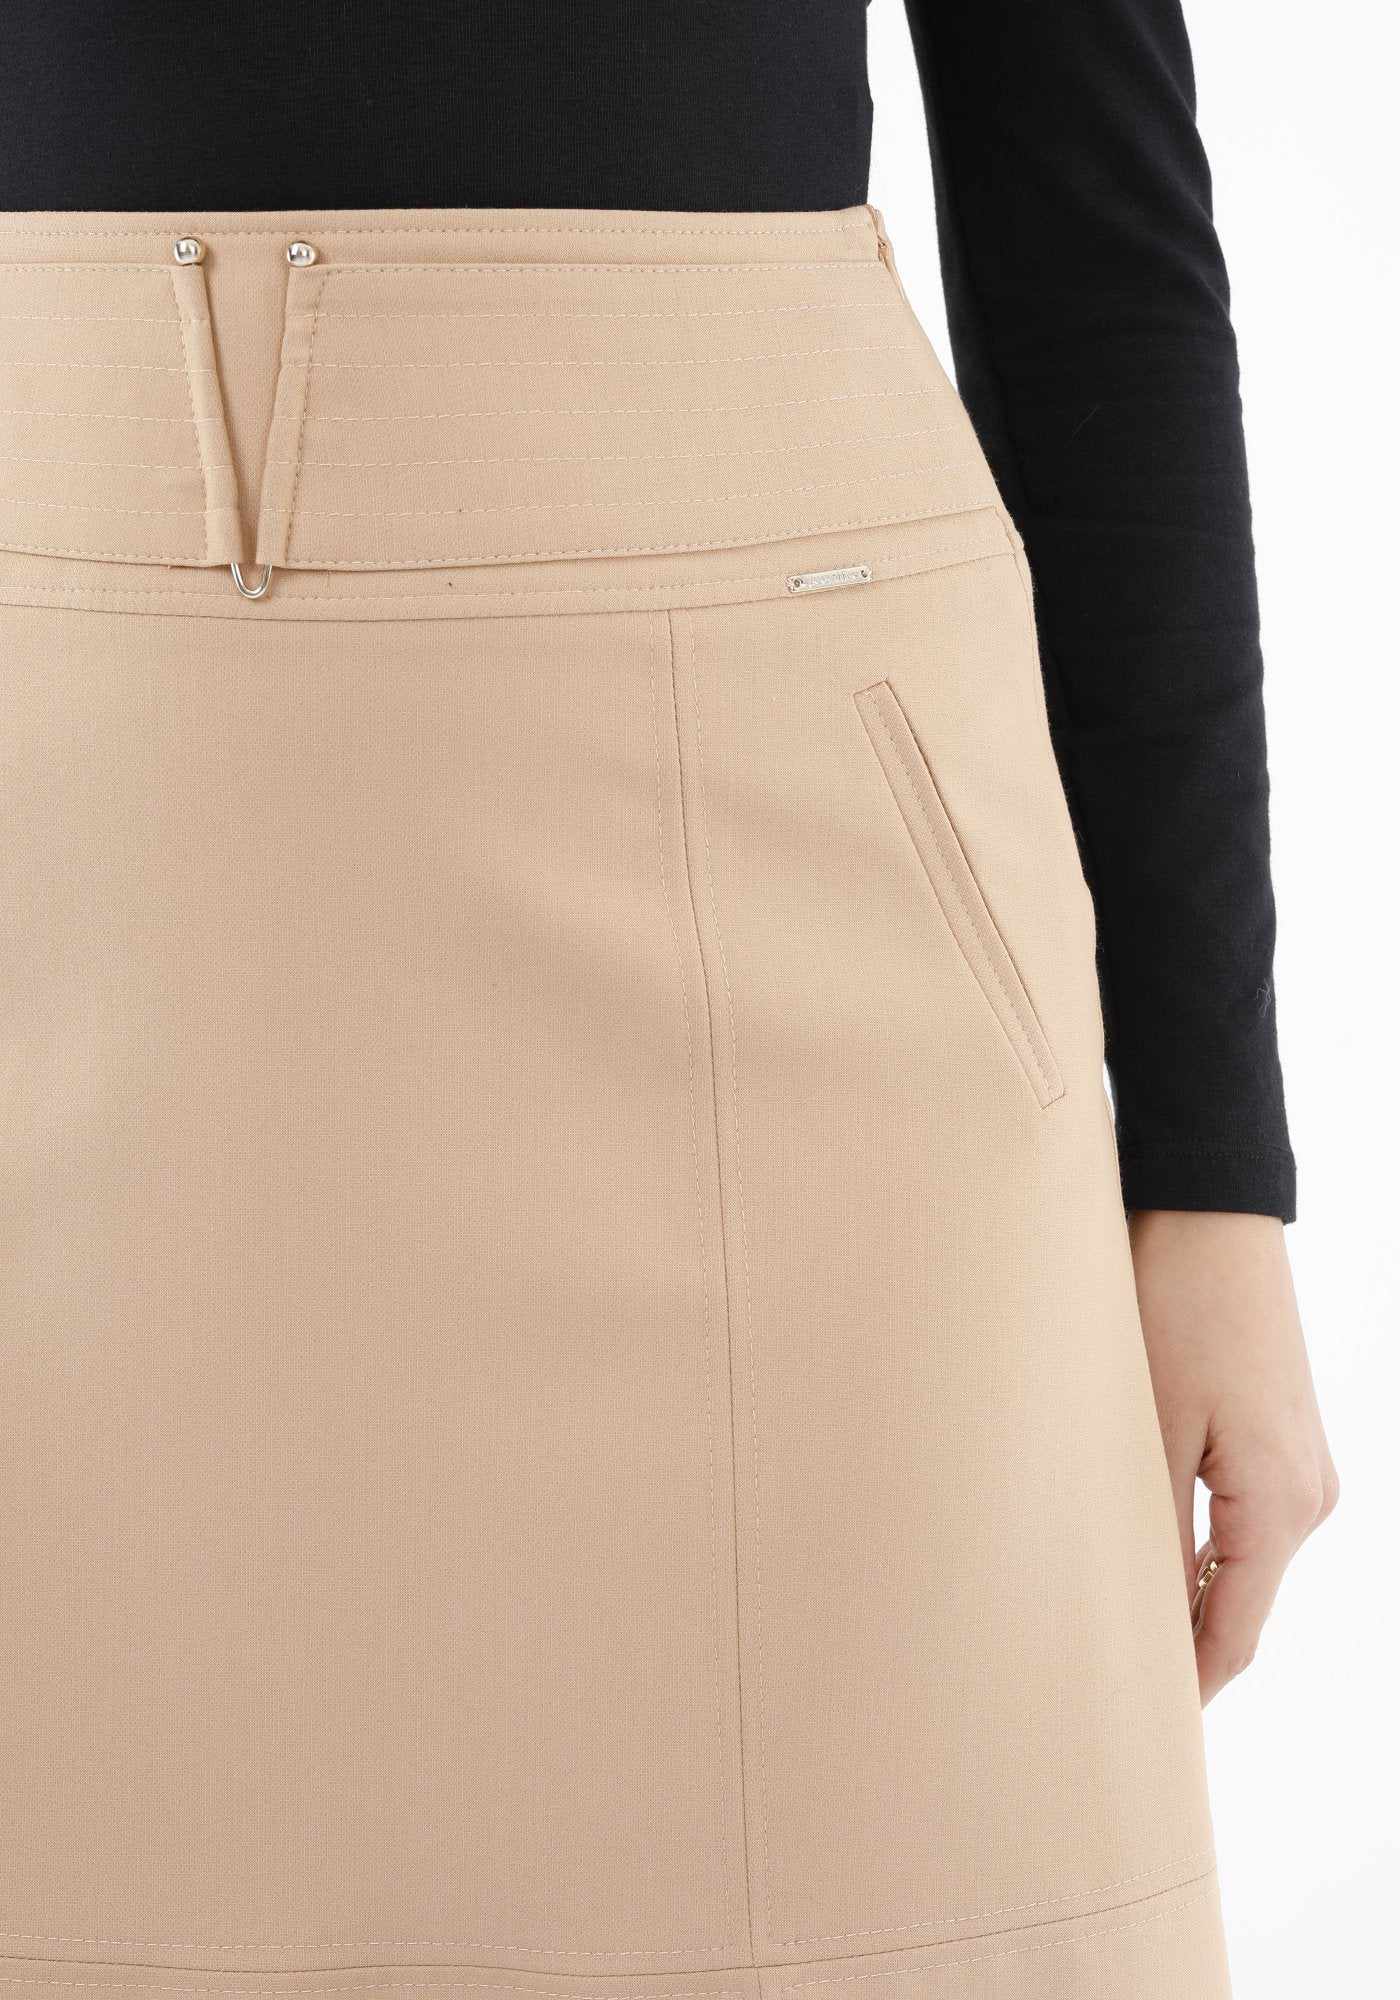 High Waist Midi Skirt with Special Belt Design Guzella